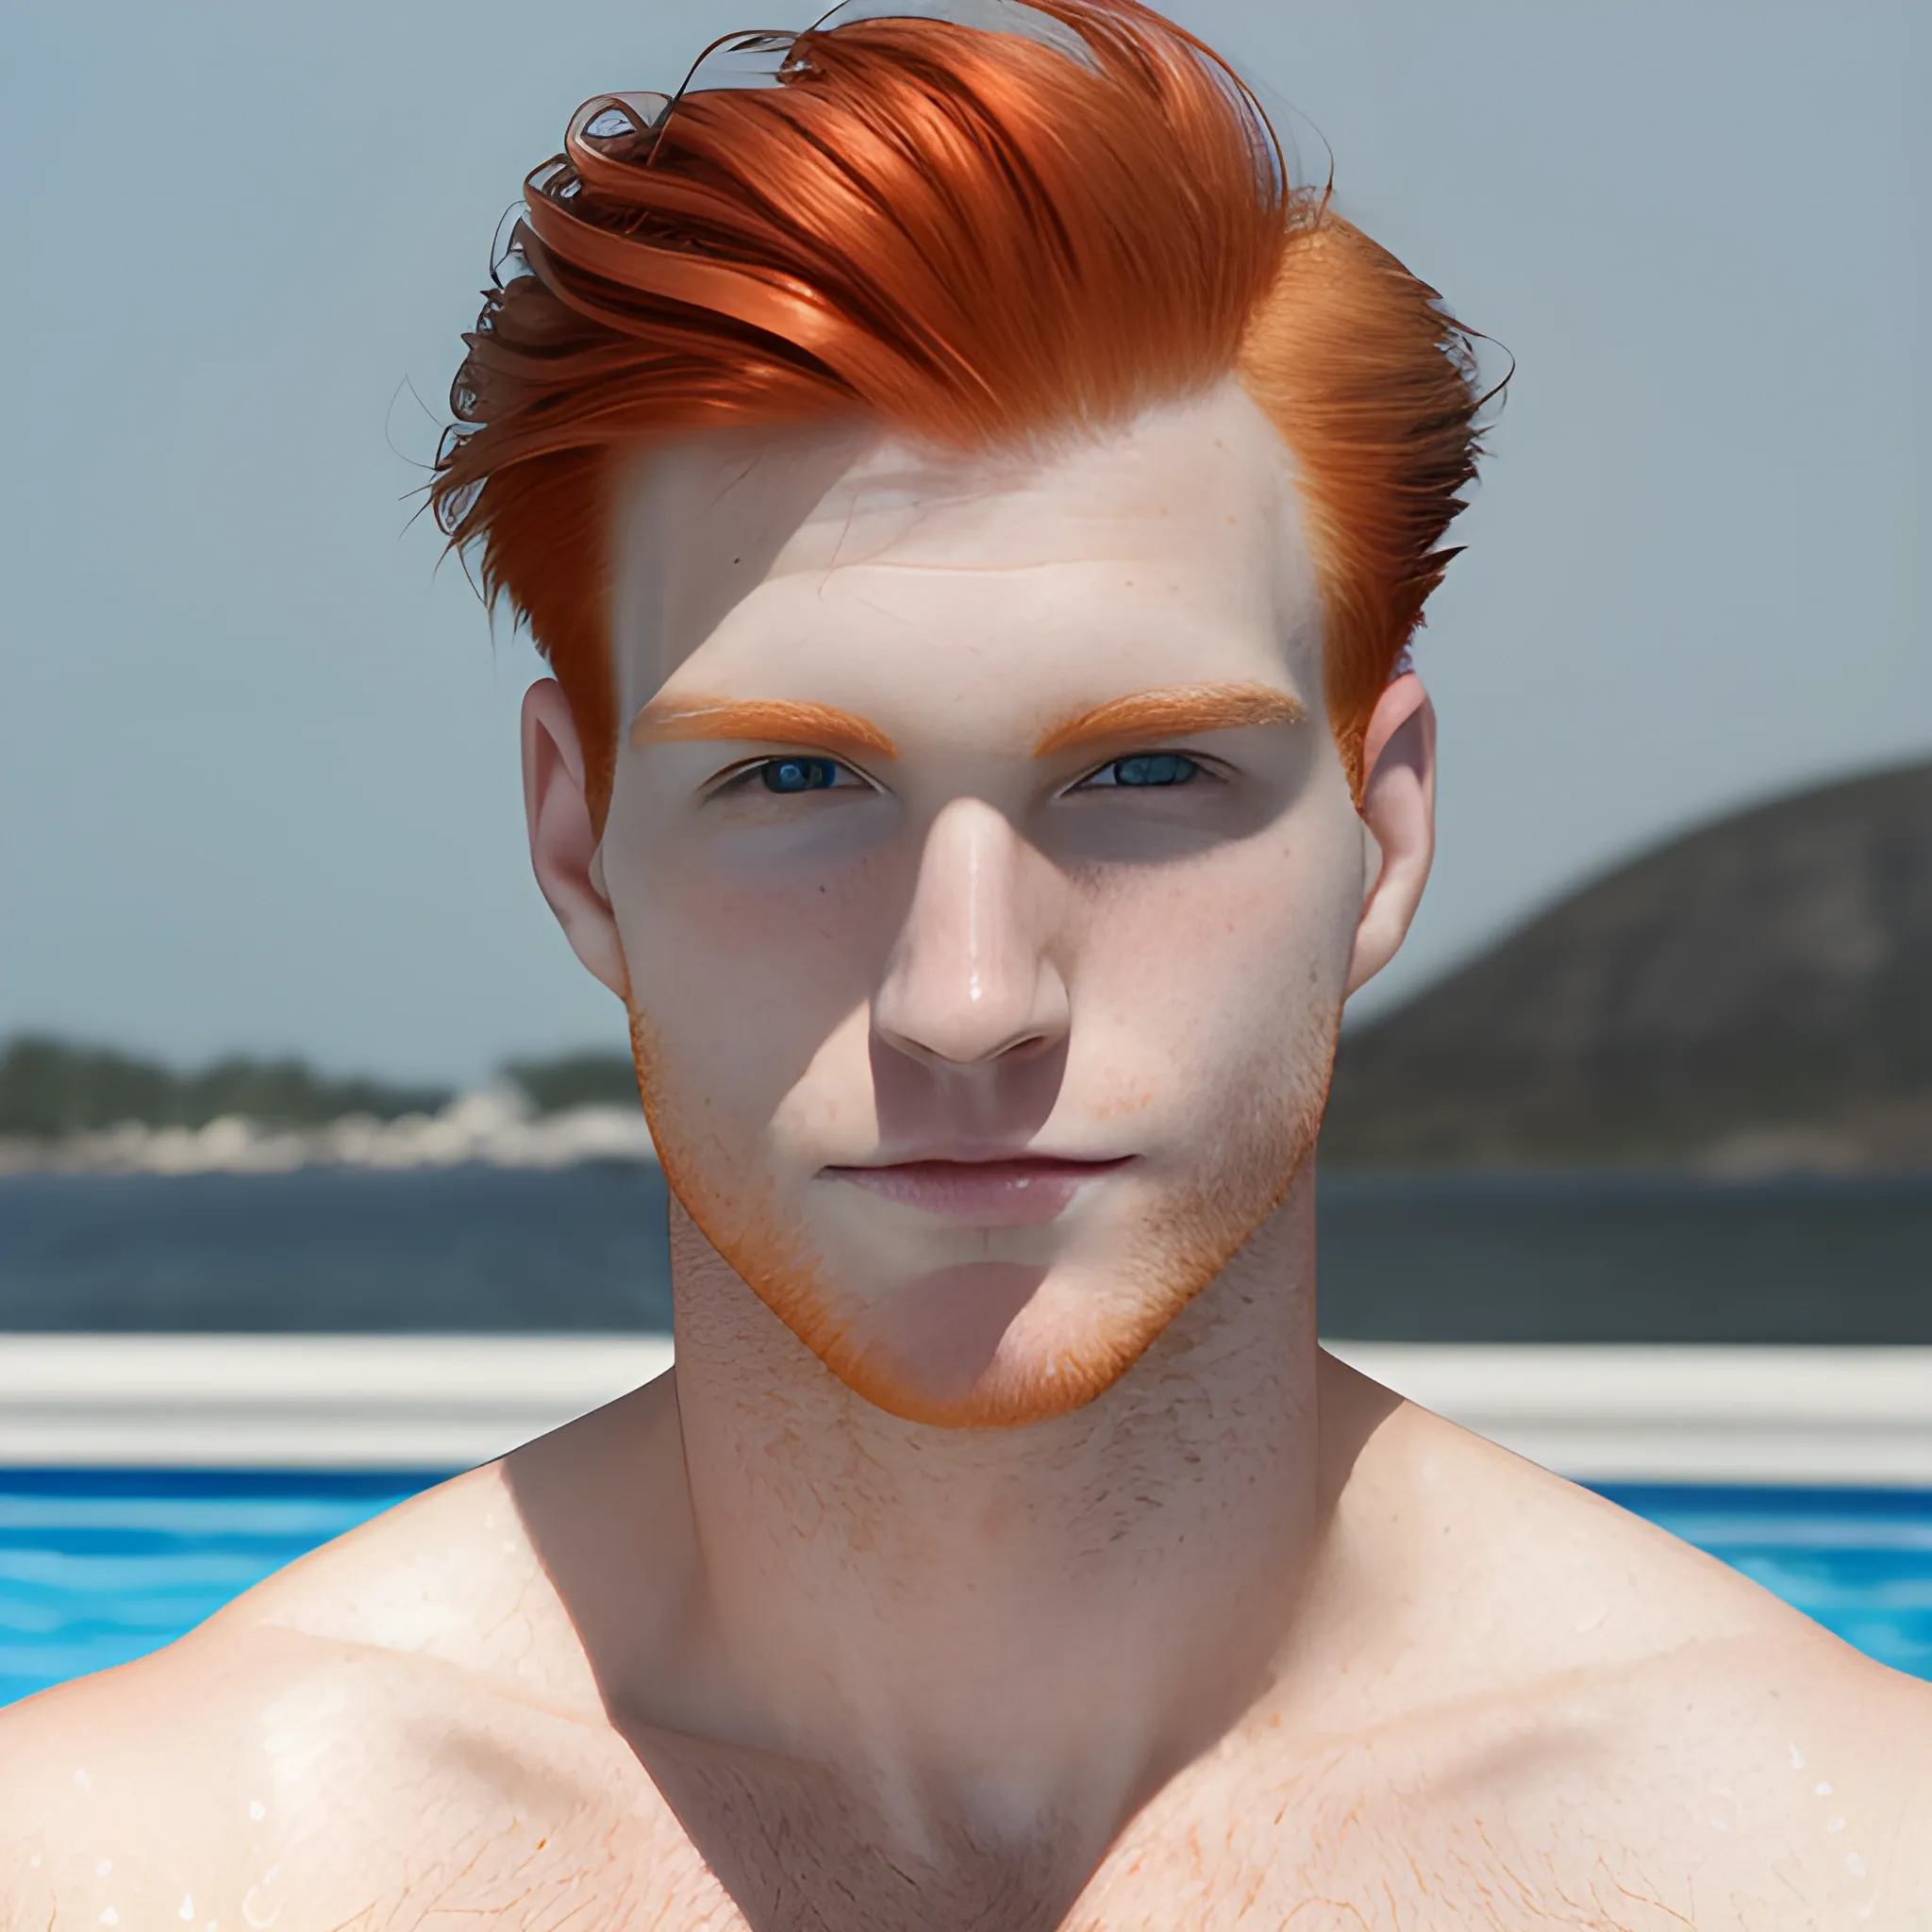 Male, redhead, swim, clean shaven